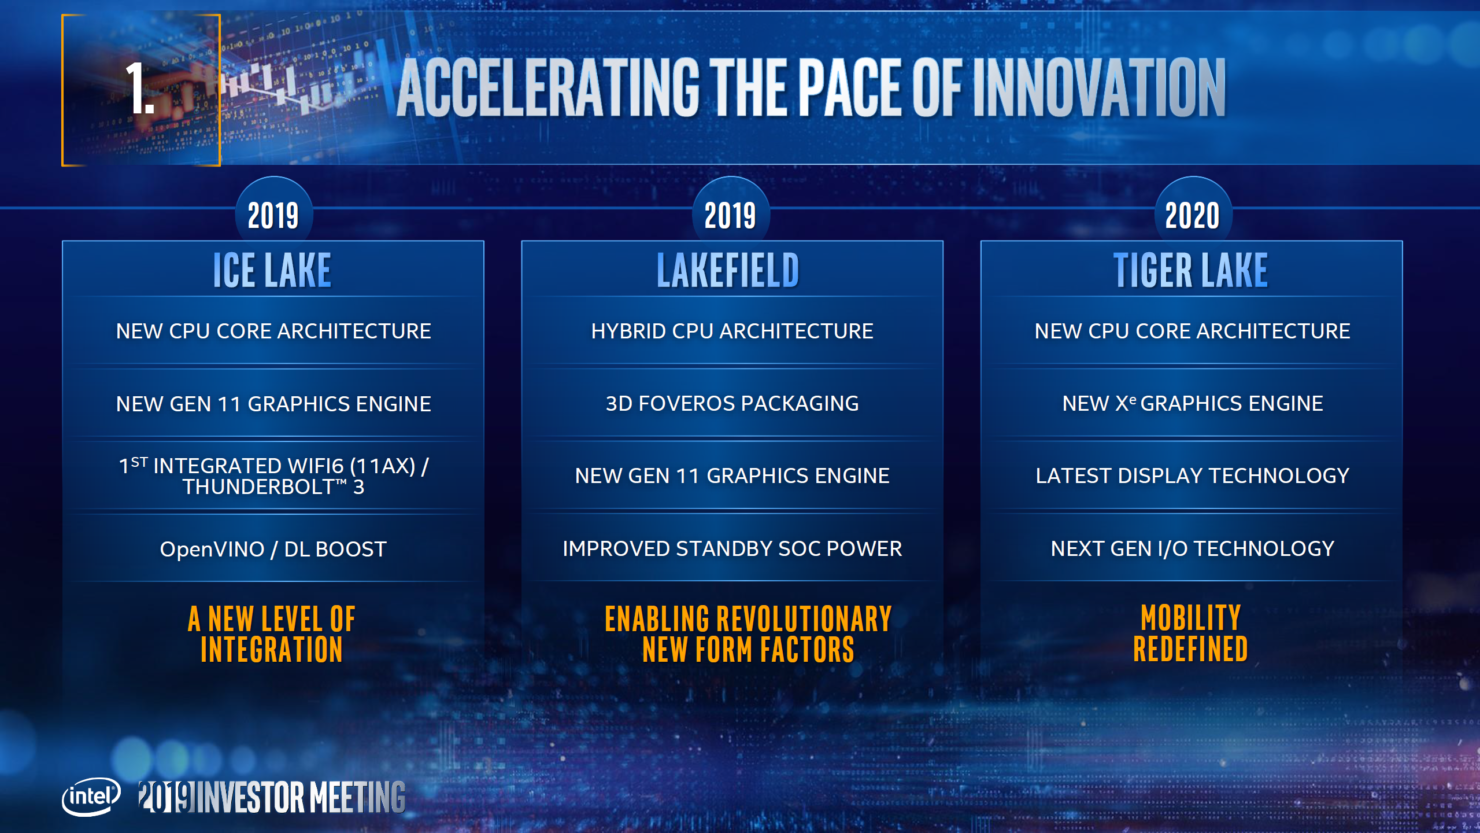 So sánh chip Intel Tiger Lake và Intel Ice Lake: Những cải tiến và nâng cấp sáng giá 5